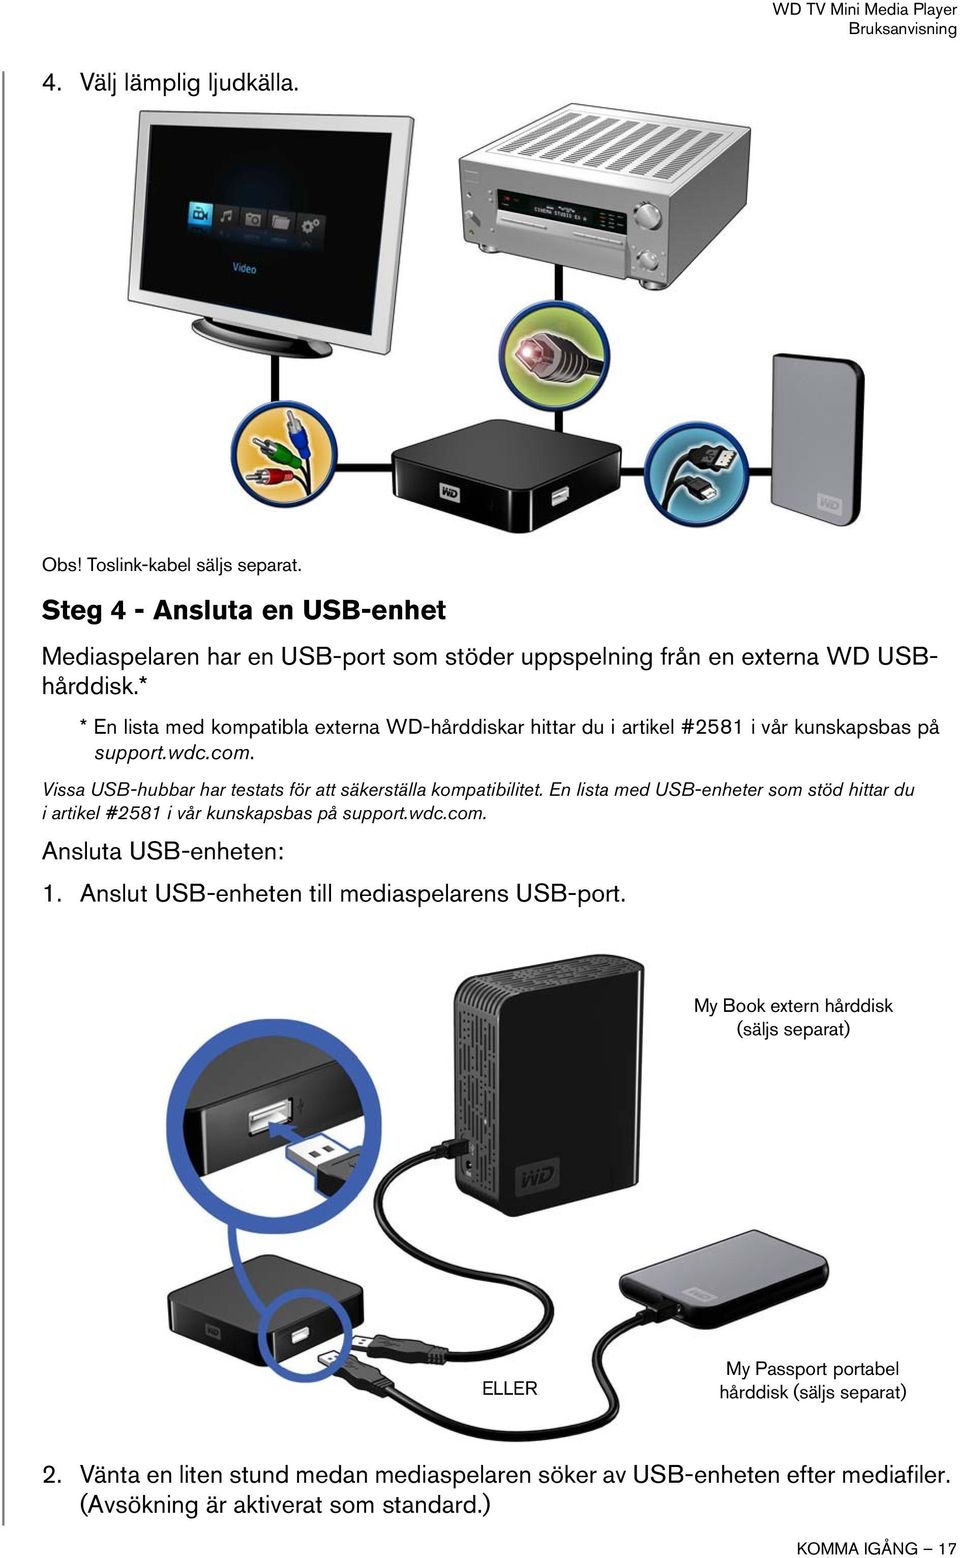 En lista med USB-enheter som stöd hittar du i artikel #2581 i vår kunskapsbas på support.wdc.com. Ansluta USB-enheten: 1. Anslut USB-enheten till mediaspelarens USB-port.